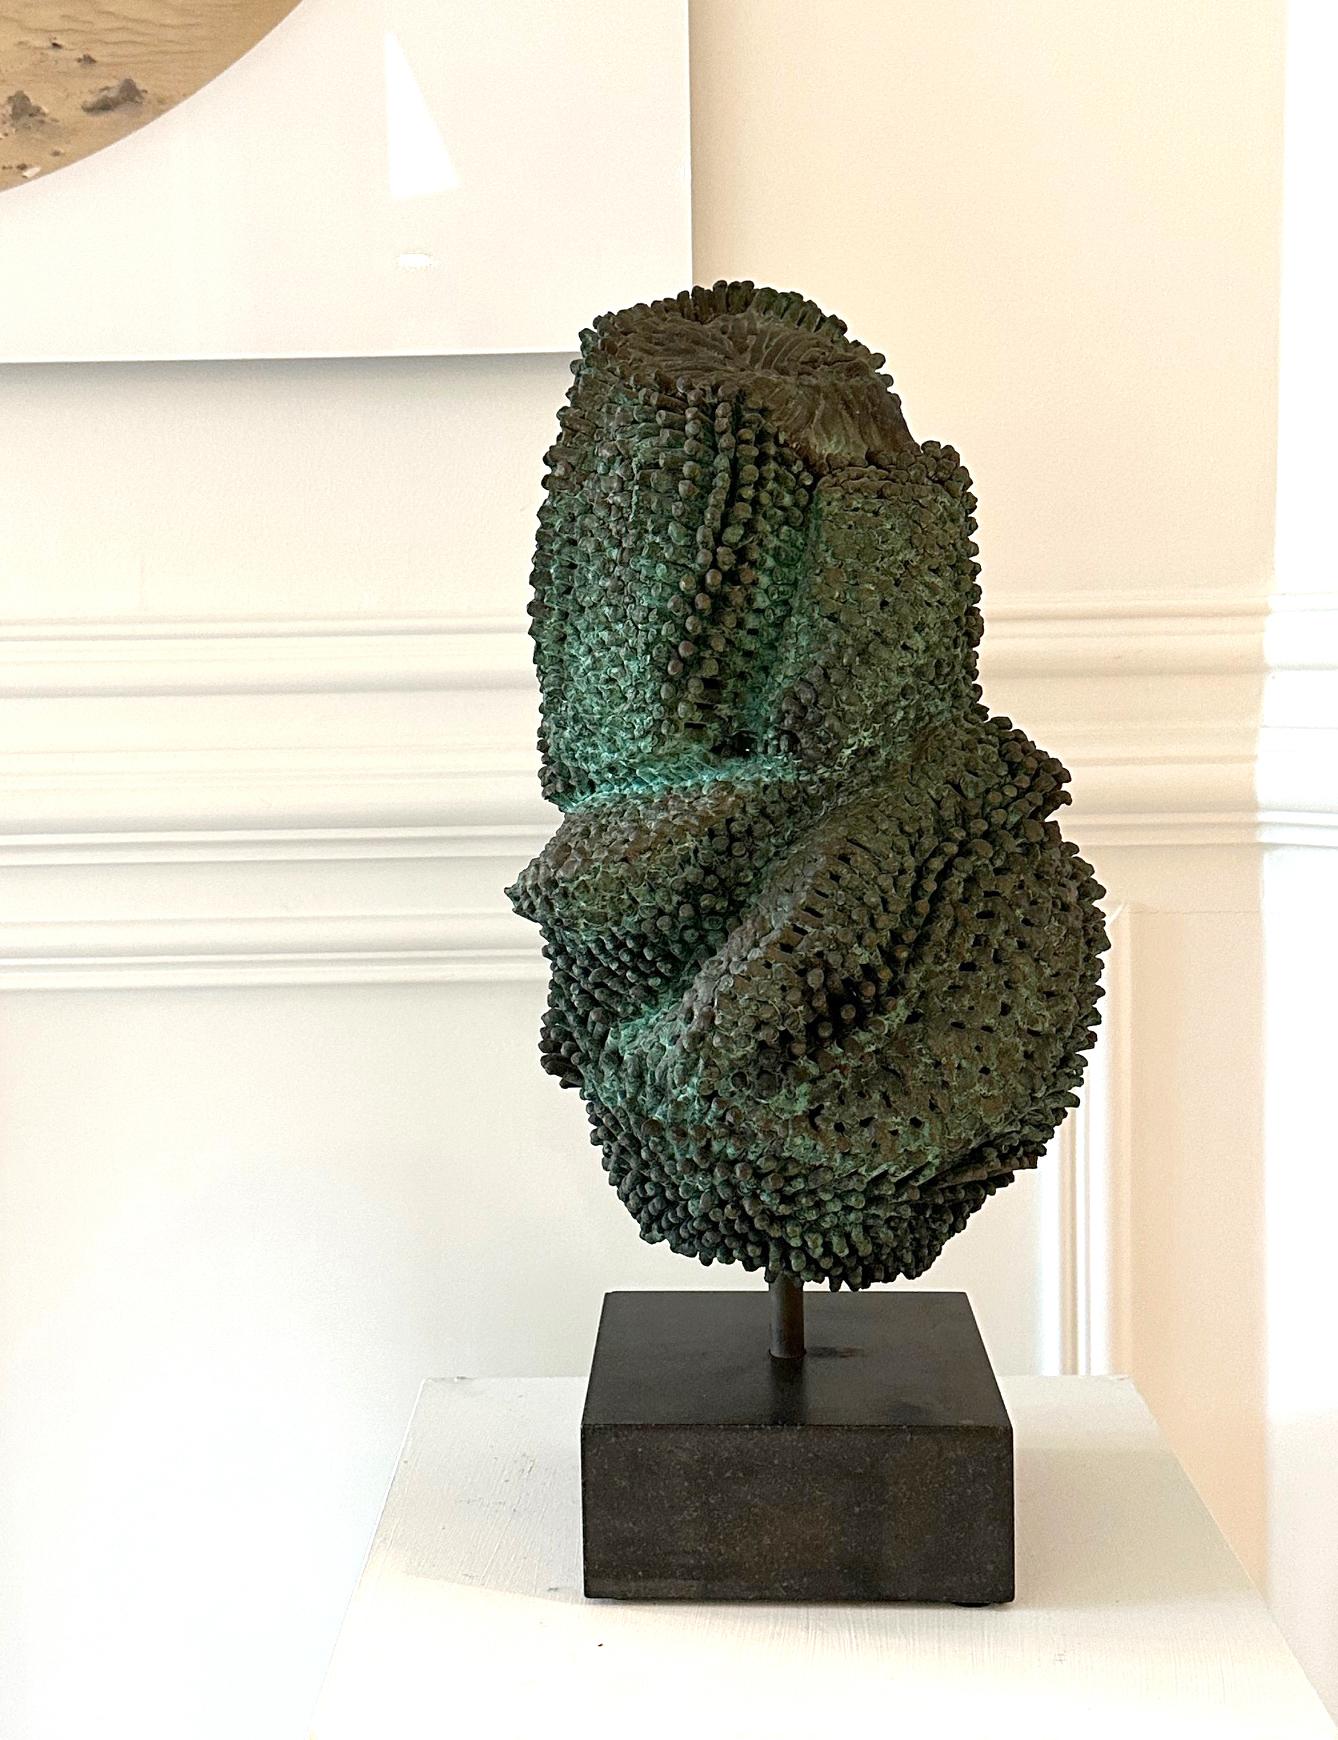 Une sculpture unique en bronze présentée sur une base en pierre de granit vers 1973 par Harry Bertoia (1915-1978), le célèbre artiste, sculpteur et designer américain d'origine italienne. La sculpture en bronze soudé et patiné est très abstraite,